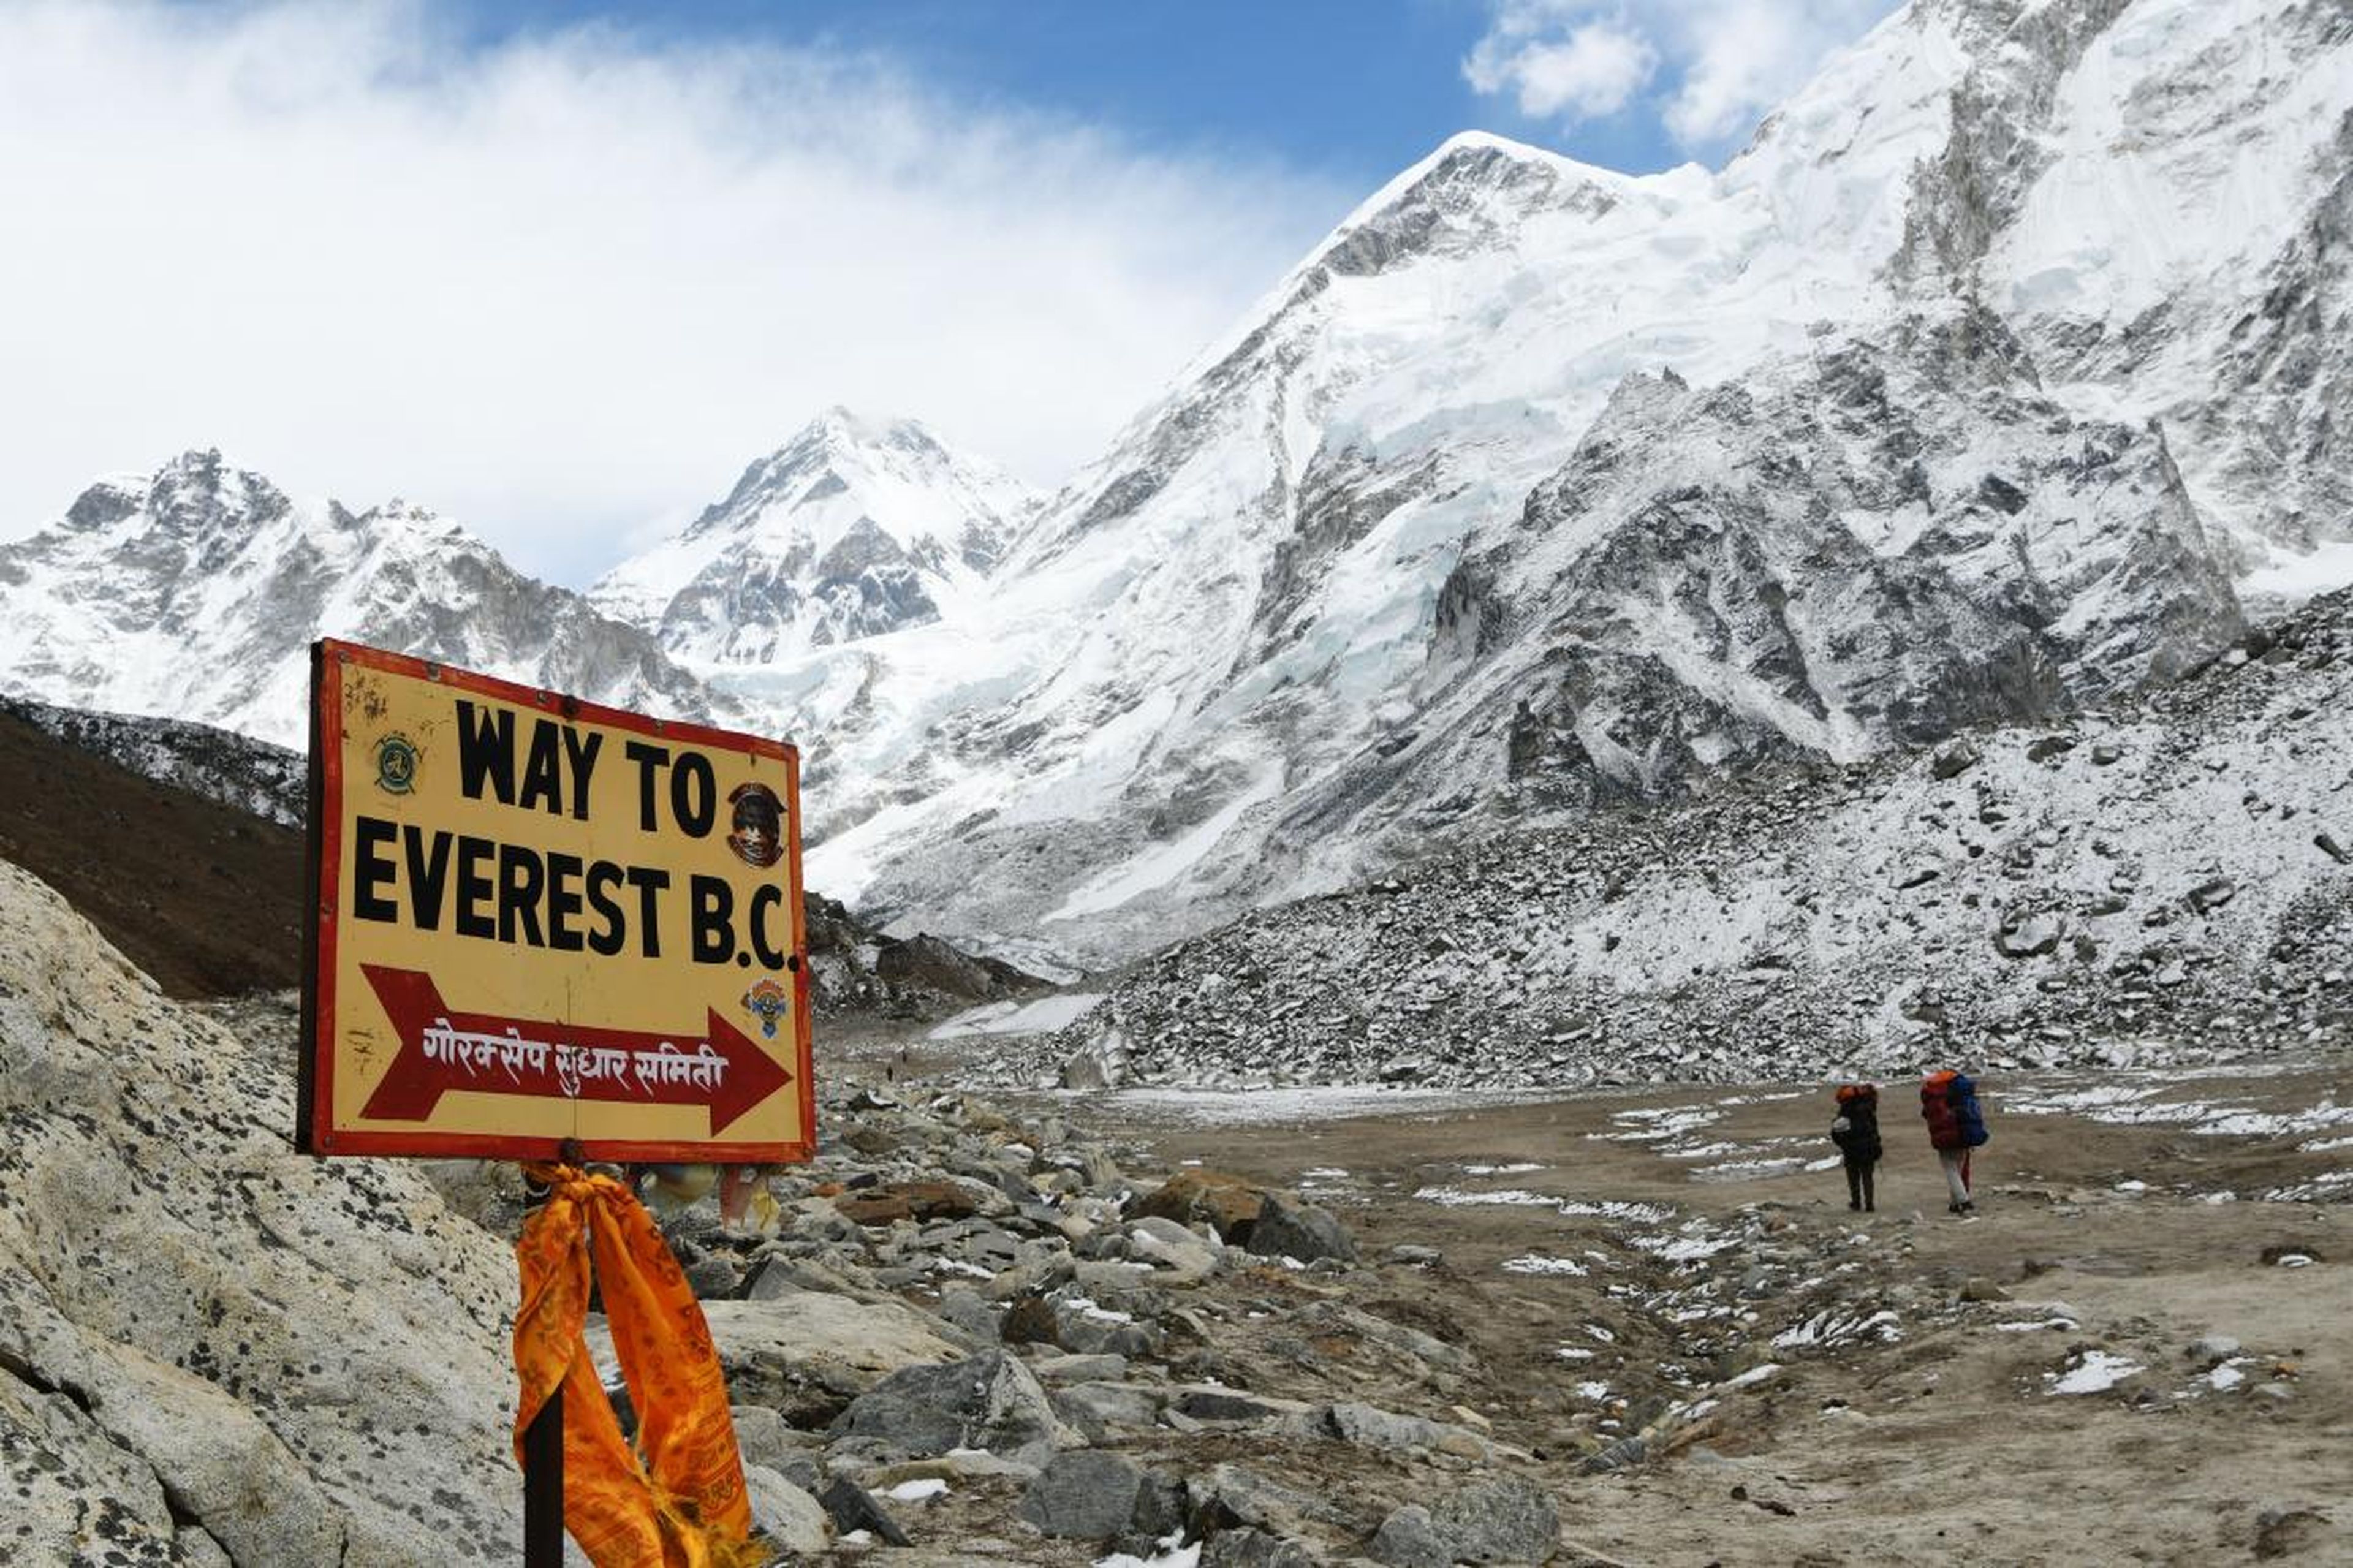 En esta fotografía tomada el 26 de abril de 2016 se ve un cartel que señala al campamento base mientras dos personas caminan a través del distrito de Solukhumbu, a 140 kilómetros de Nepal